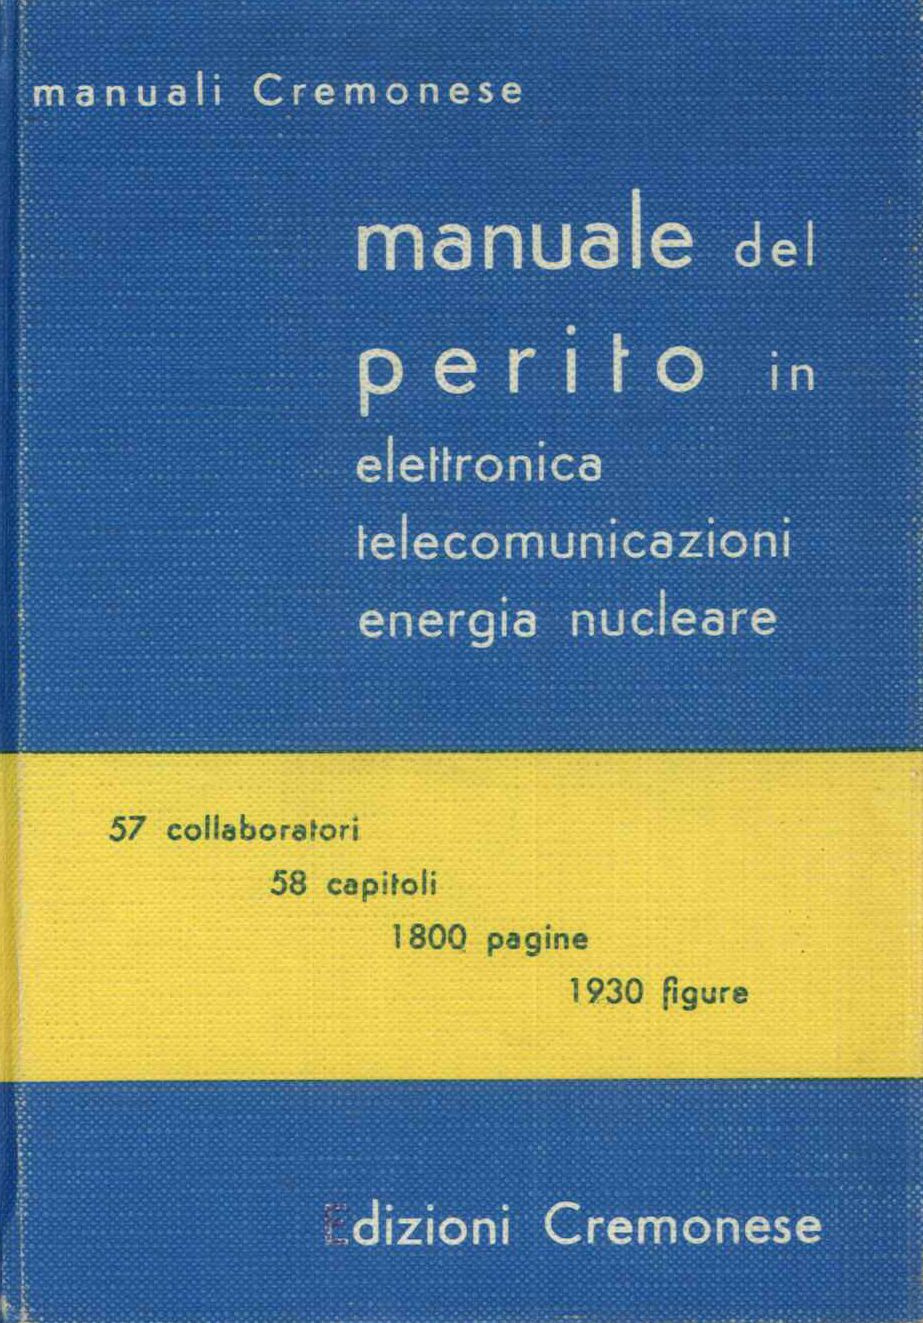 Manuale del perito in elettronica, telecomunicazioni, energia nucleare